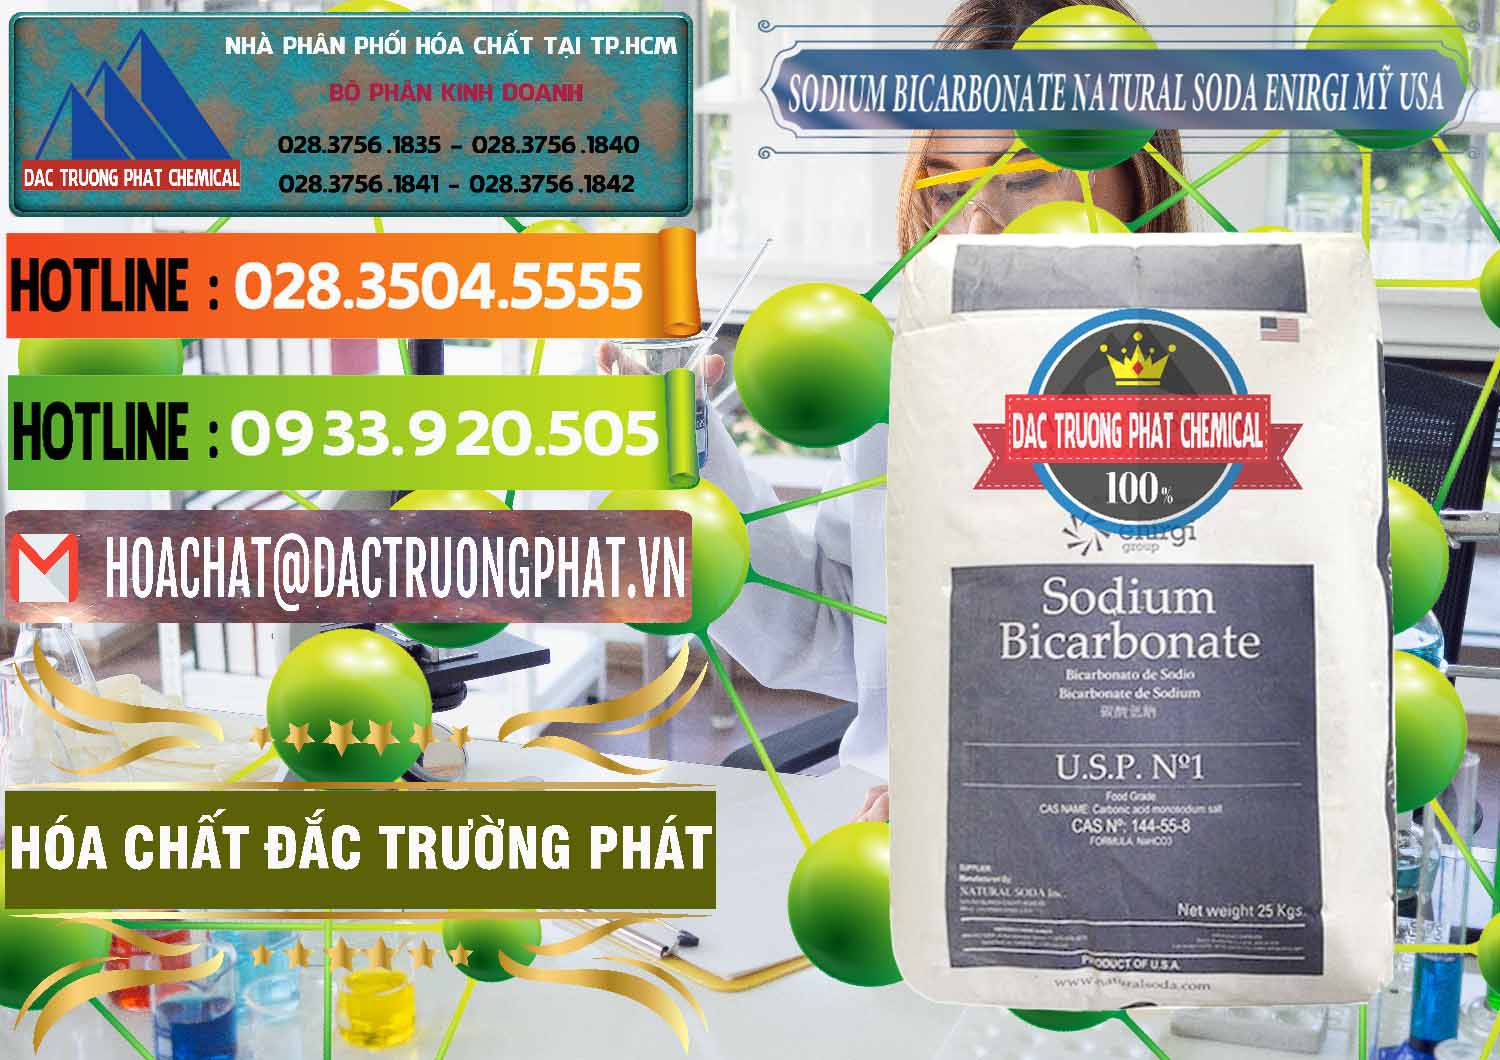 Đơn vị bán & phân phối Sodium Bicarbonate – Bicar NaHCO3 Food Grade Natural Soda Enirgi Mỹ USA - 0257 - Nơi chuyên cung cấp _ bán hóa chất tại TP.HCM - cungcaphoachat.com.vn